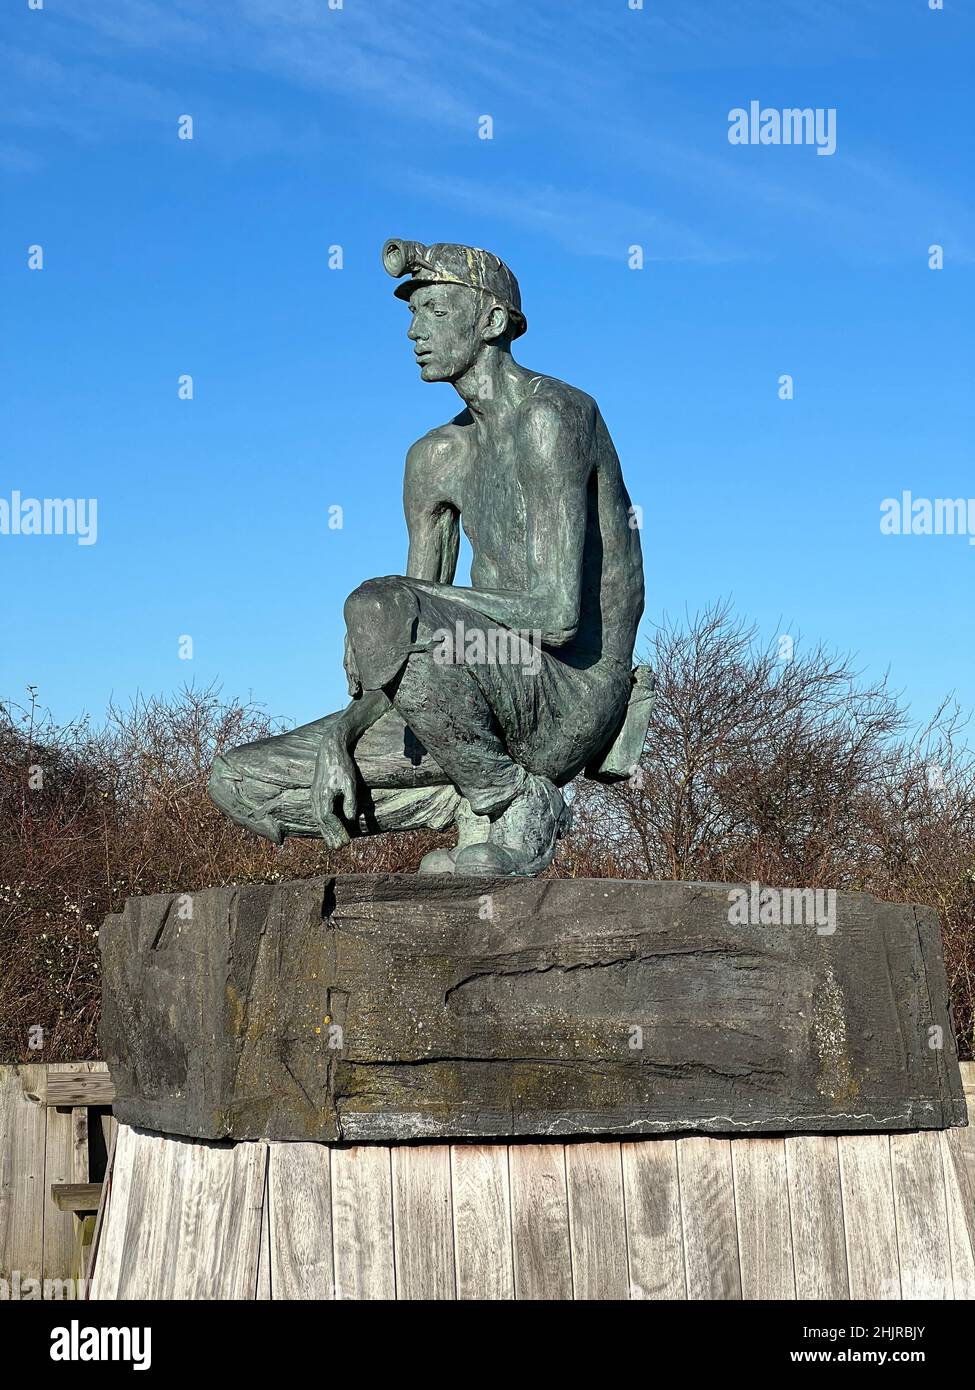 La statue du Miner en attente a été déplacée dans le parc national Fowlmead, l'ancien site de la mine de charbon Betteshanger, à Kent, au Royaume-Uni Banque D'Images